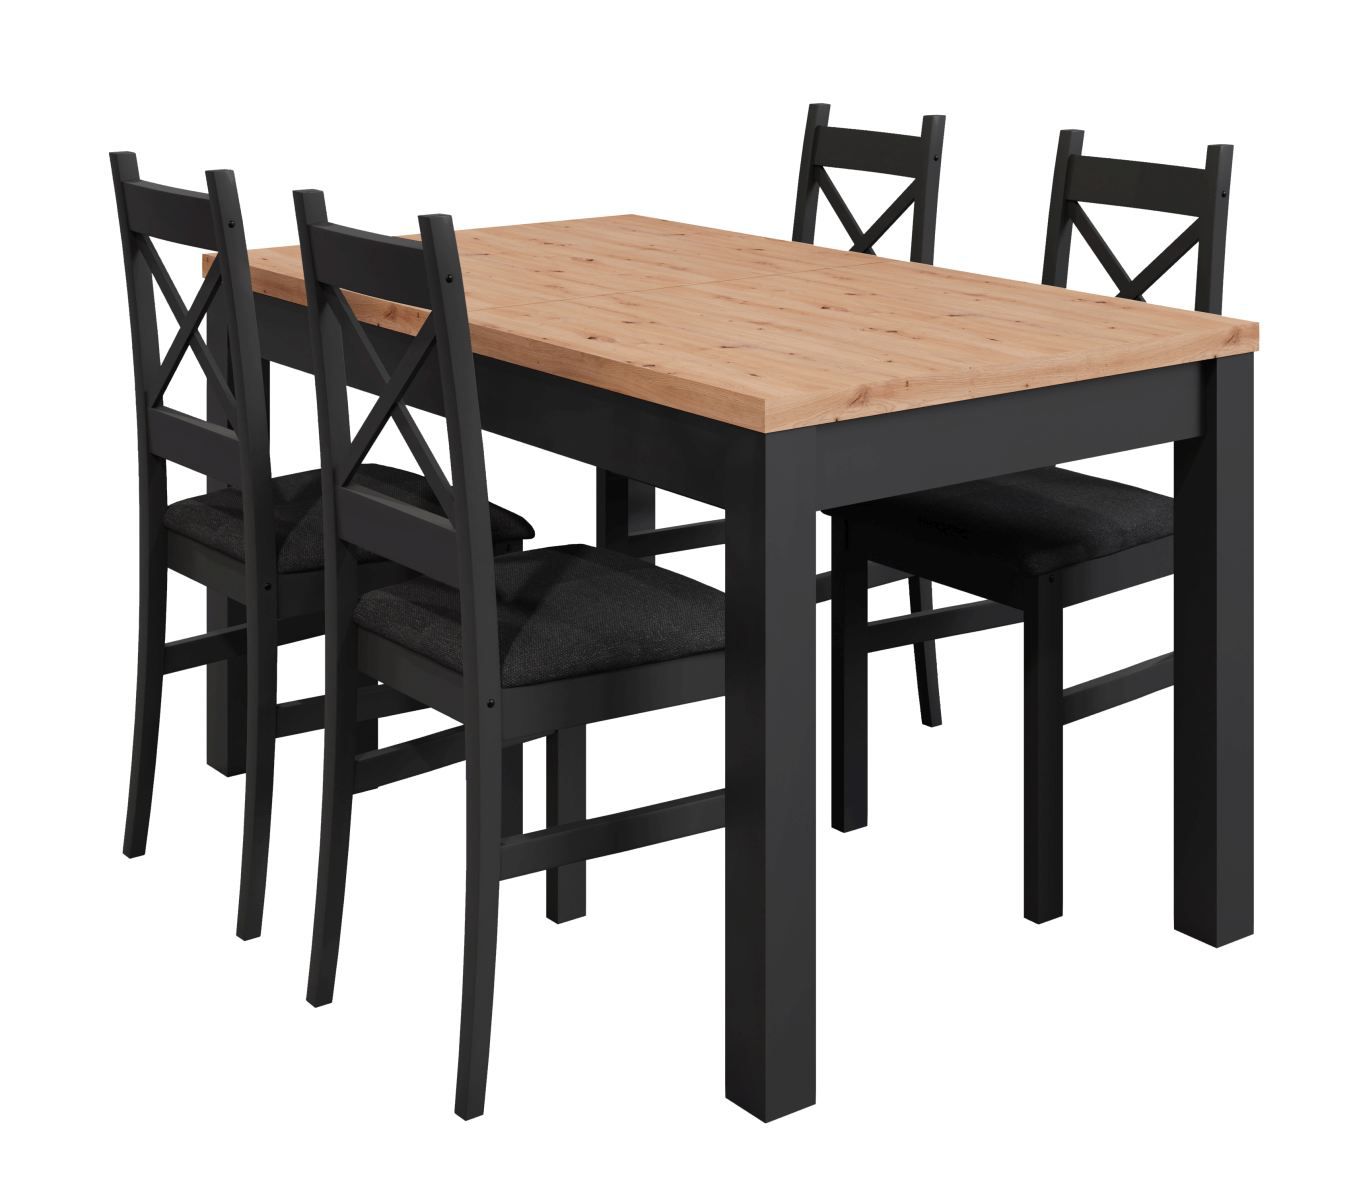 Table de salle à manger bicolore Temerin 35 extensible avec 4 chaises en bois massif, Chêne artisan / Noir mat, robuste et durable, couleurs agréables